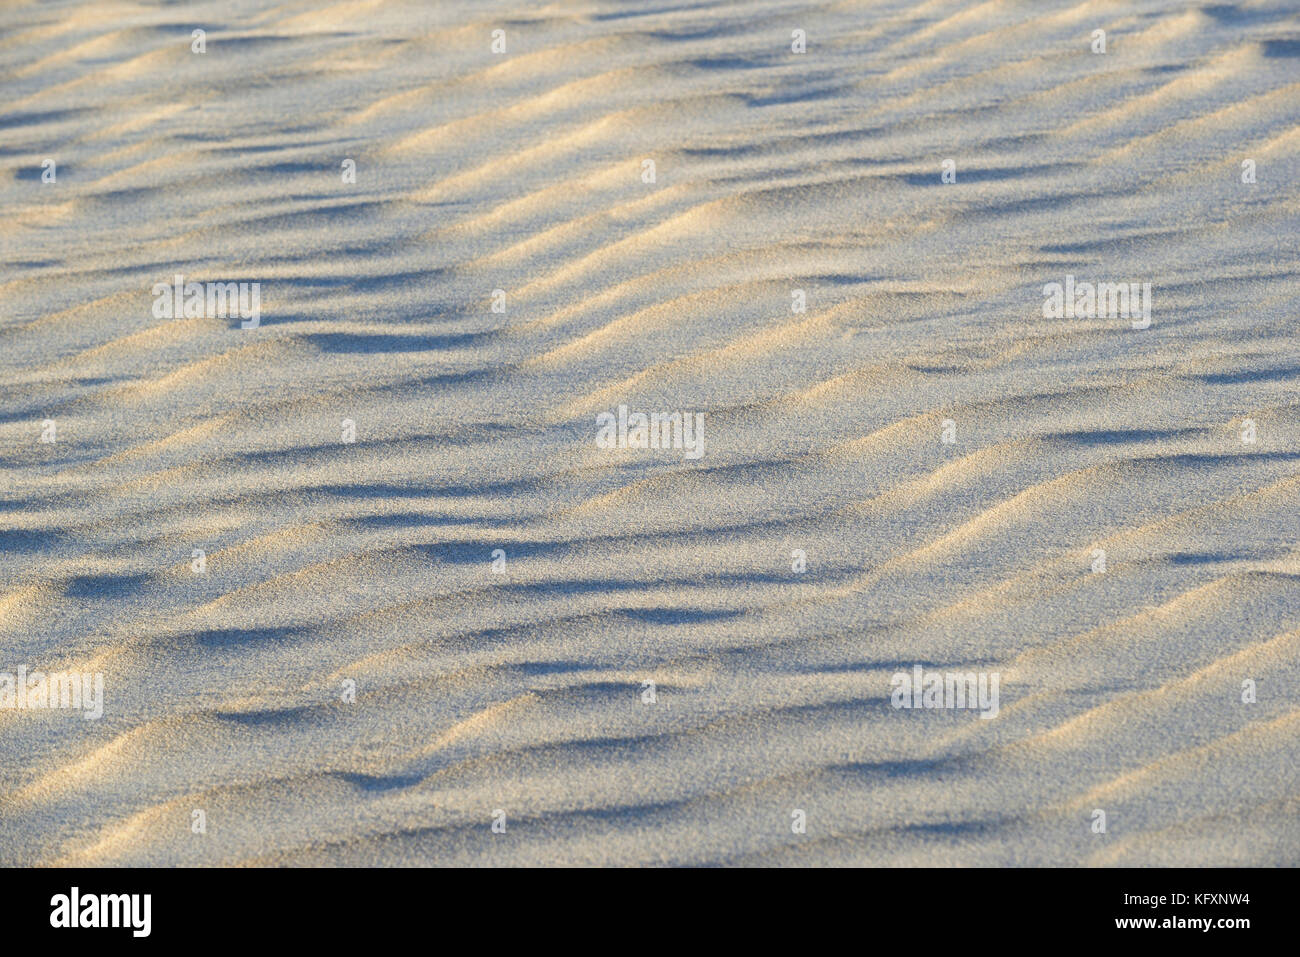 Des structures ressemblant à des vagues, ondulation dans le sable, norderney, îles de la Frise orientale, Basse-Saxe, Allemagne Banque D'Images